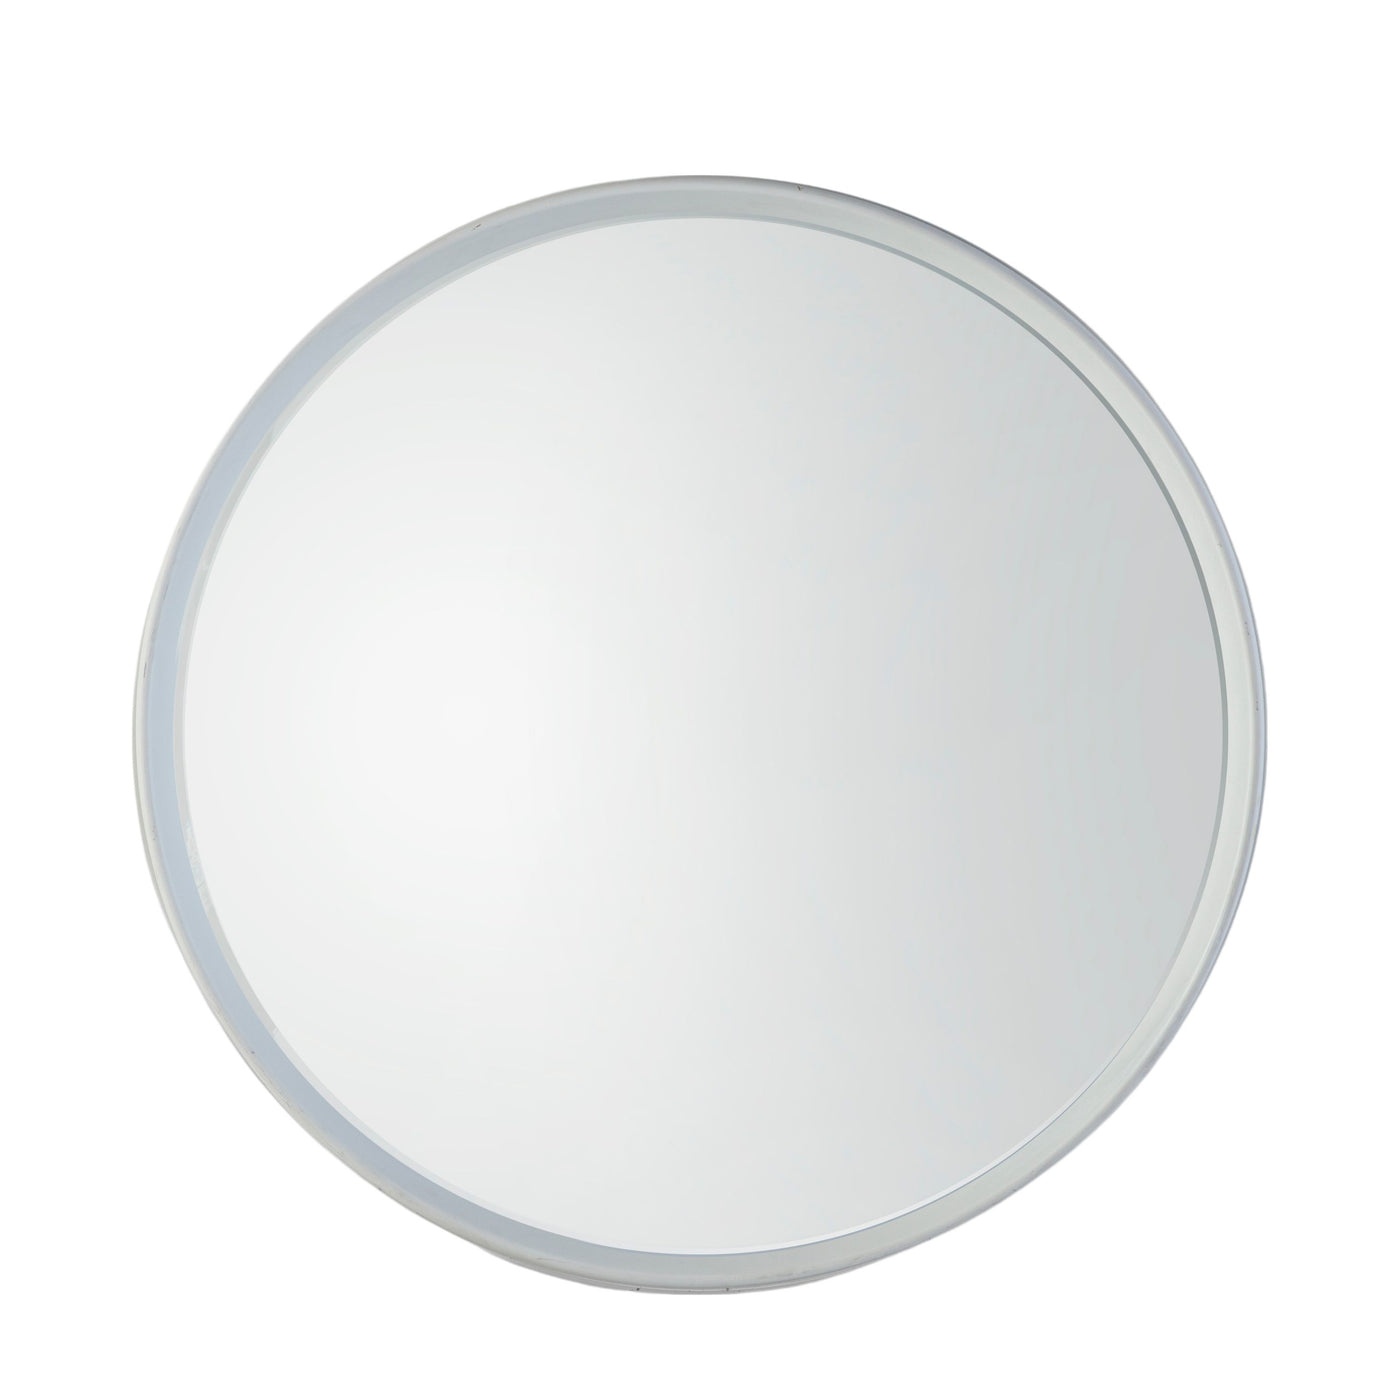 Charaton Round Mirror White